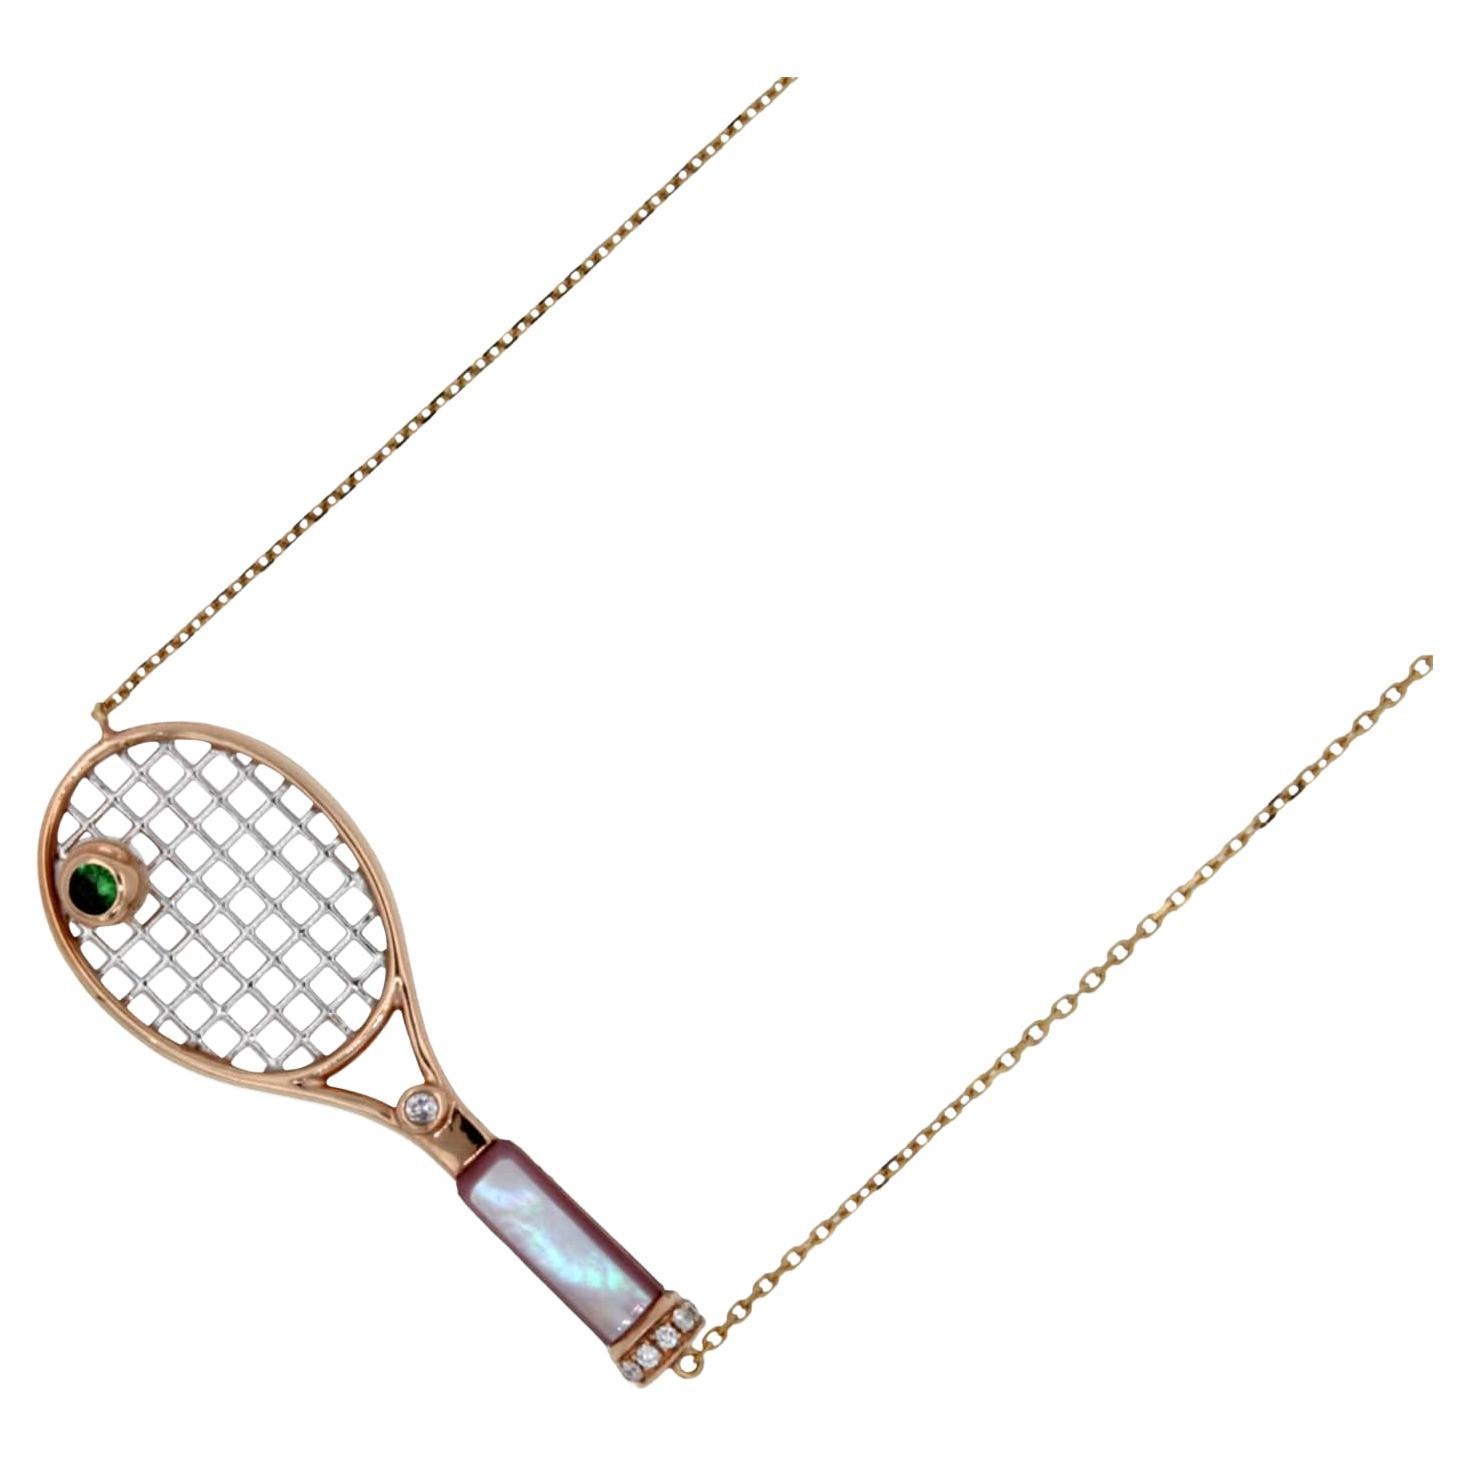 18K Rose Gold
Rosa Perlmutt-Edelstein-Griff
Grüner Smaragd Tennisball Edelstein
0,25 Karat Diamanten
Ungefähre Länge des Ace-Schlägers: 1,77